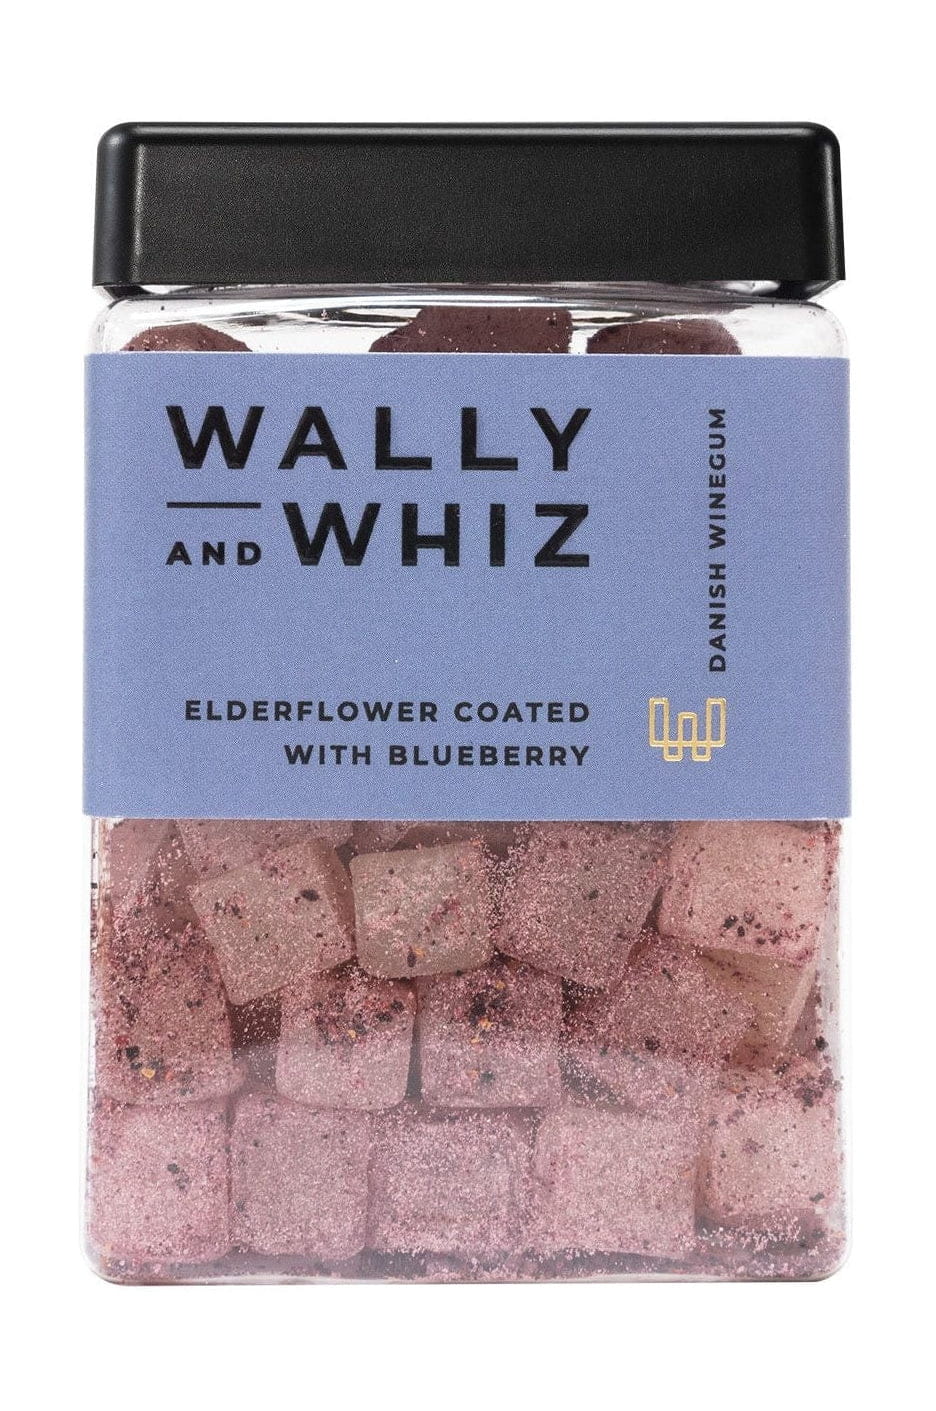 Wally And Whiz Vingummi kub, äldsteblomma med blåbär, 240 g